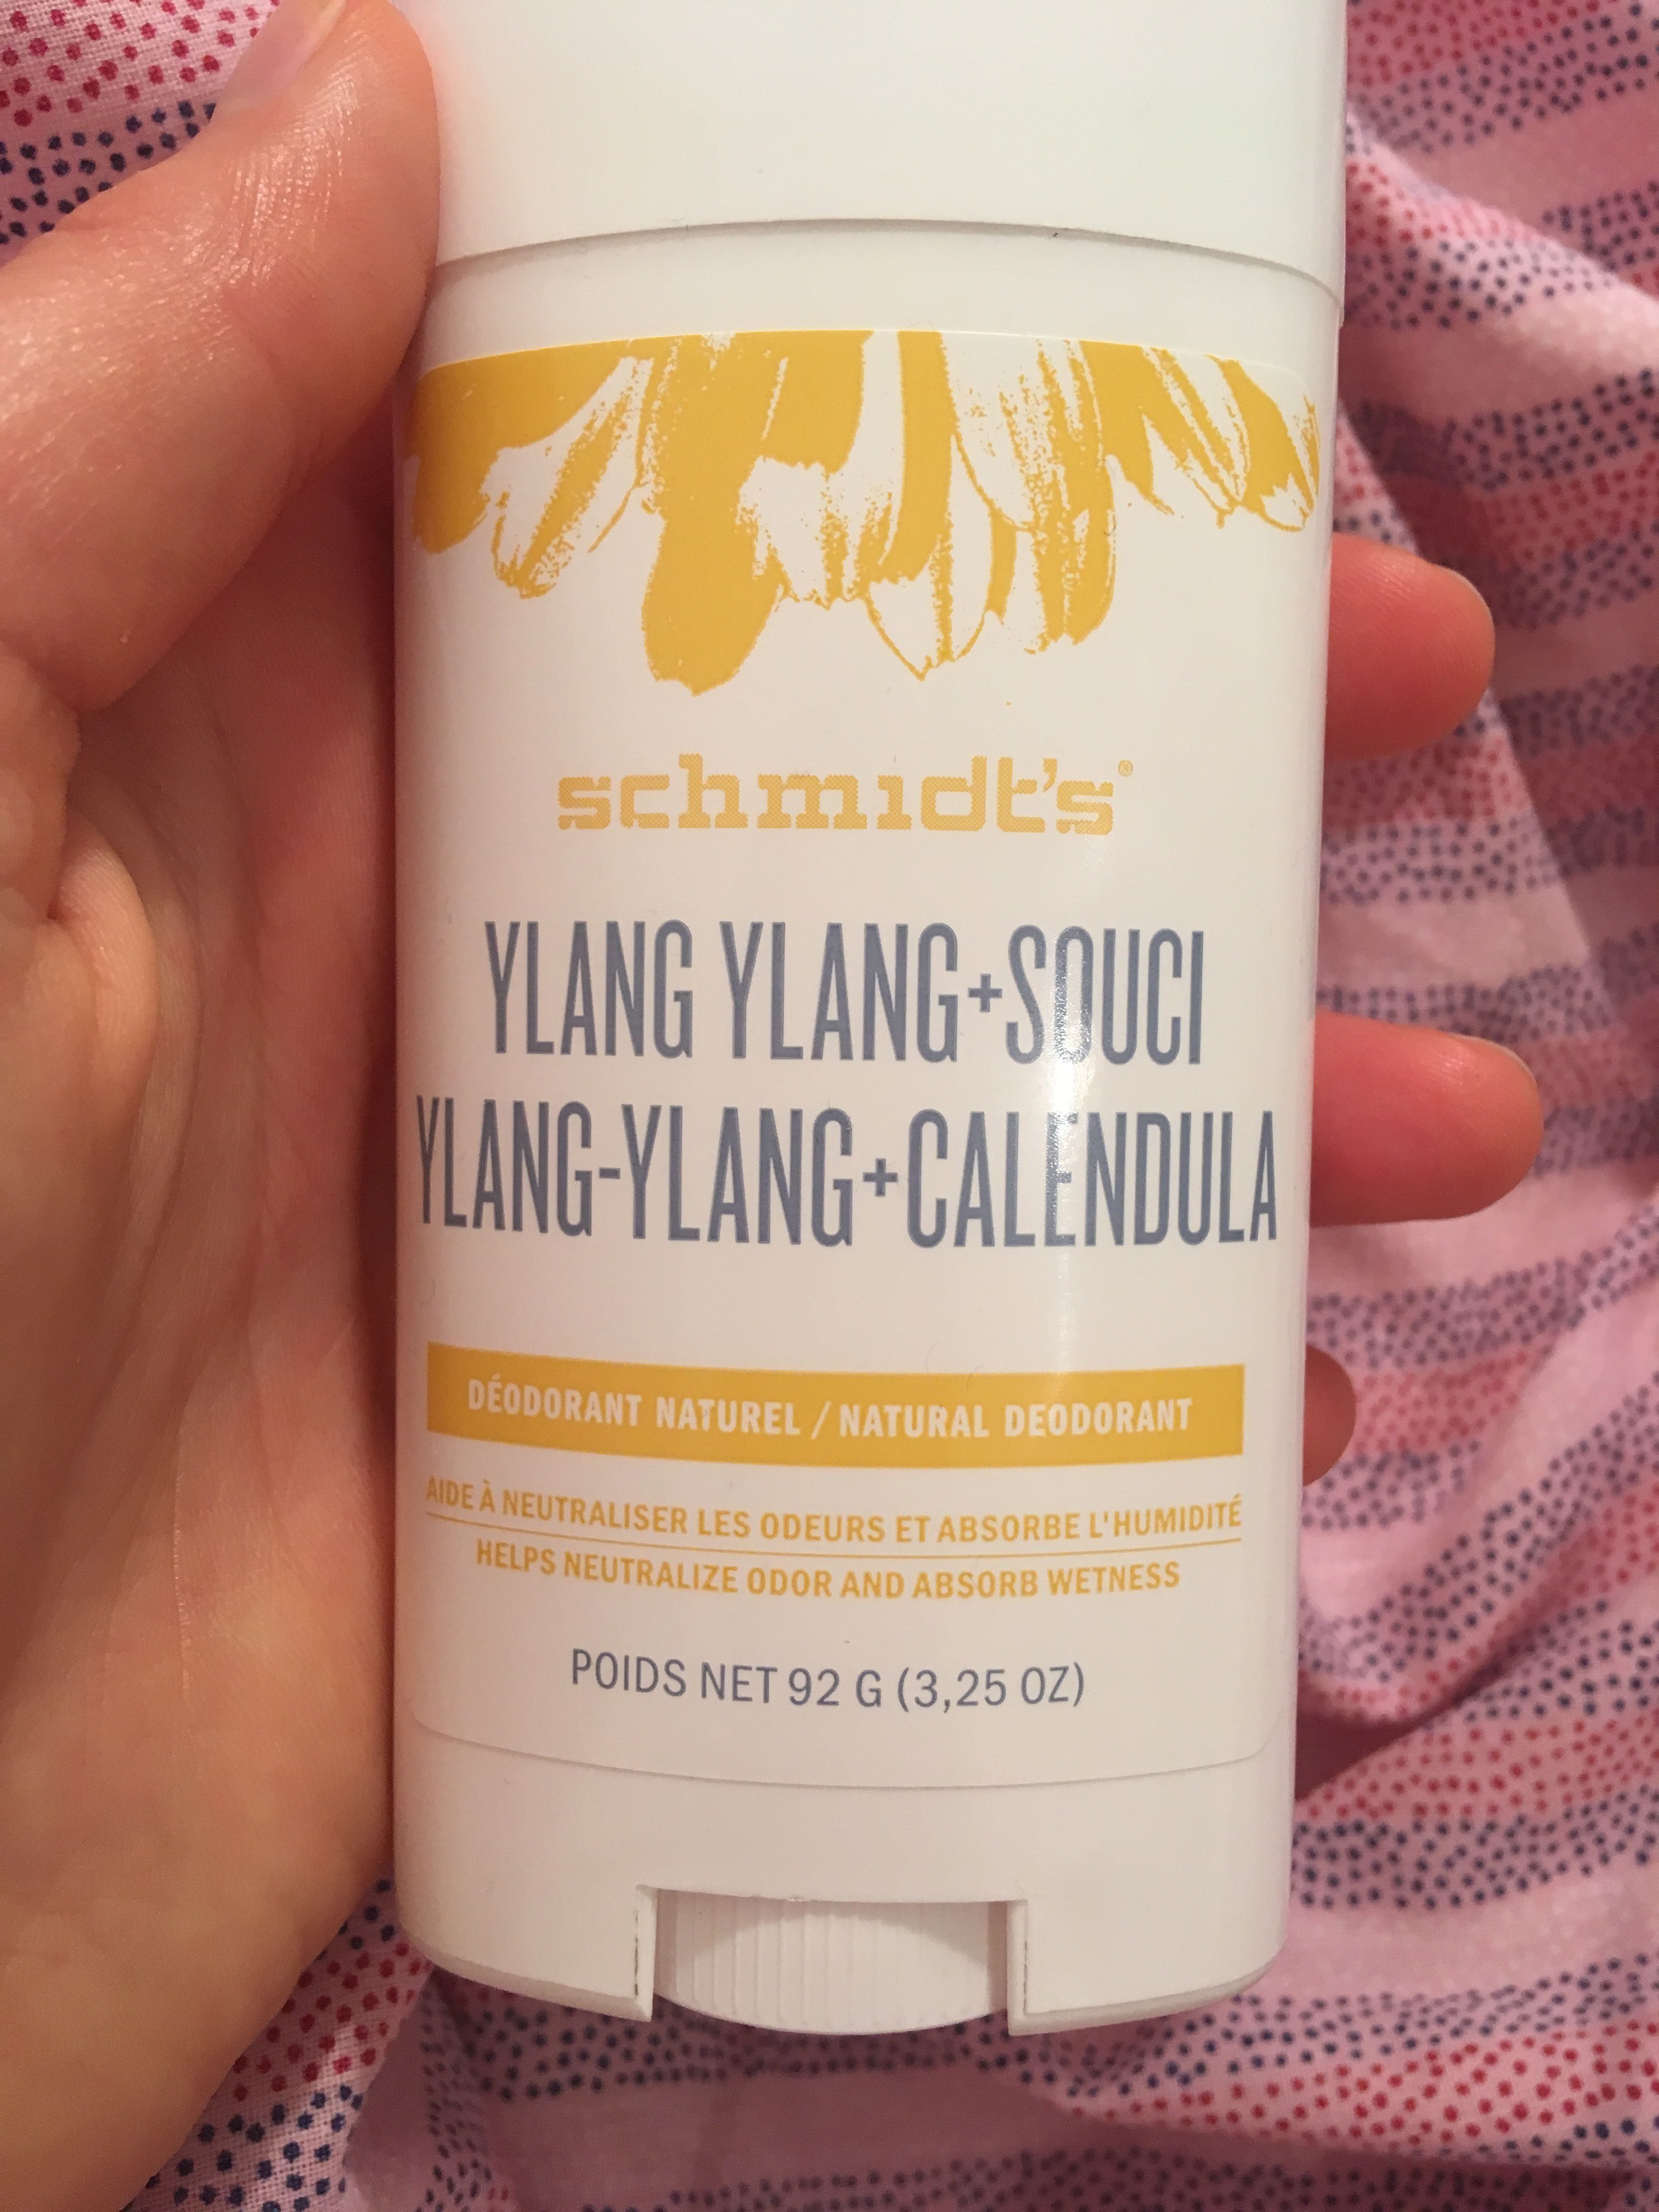 Ylang-Ylang + Calendula Deodorant naturel - Produto - fr